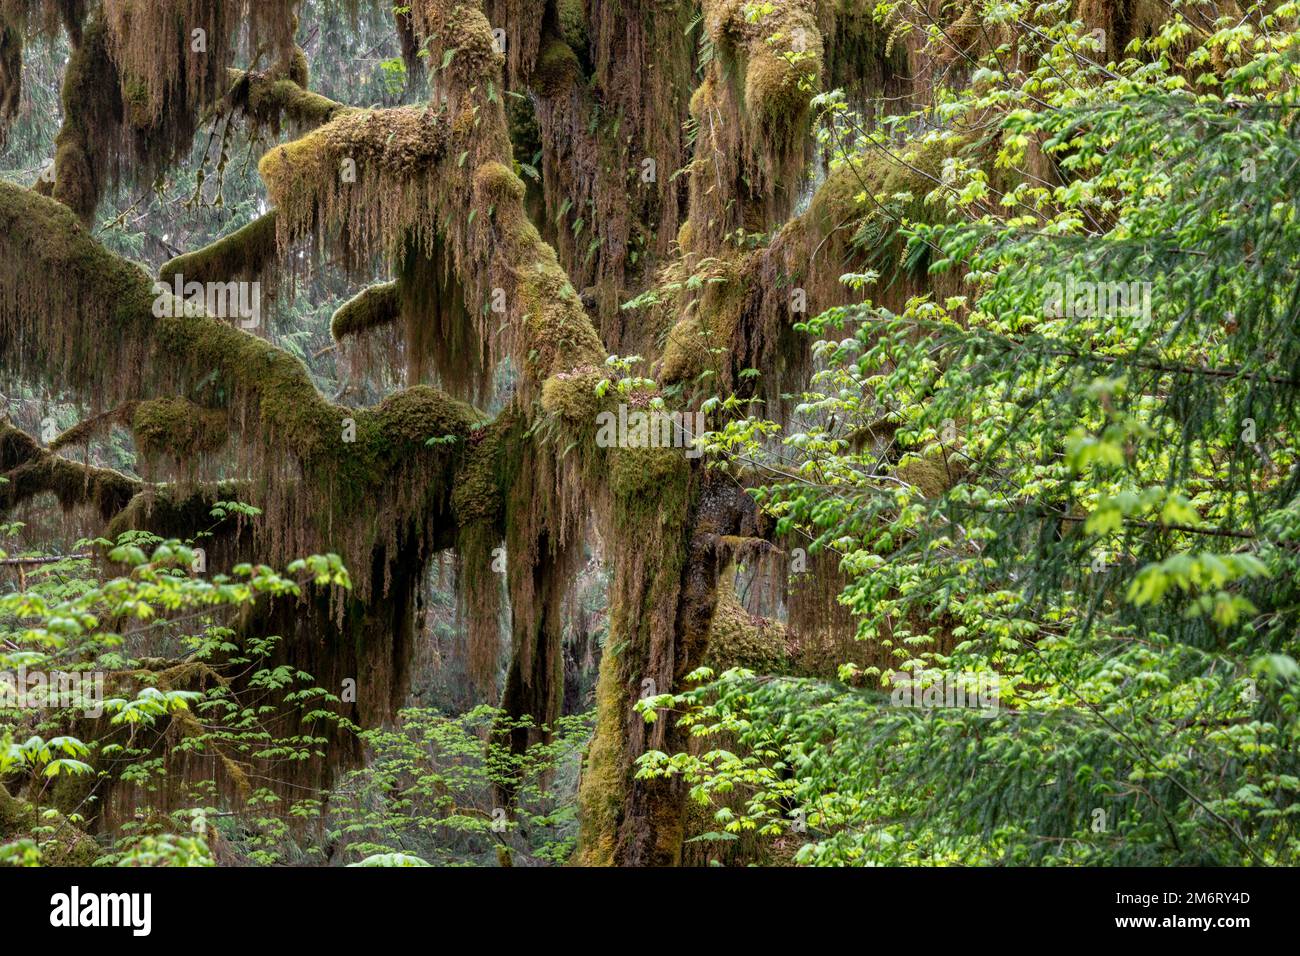 WA20873-00..... WASHINGTON - arbres couverts de mousse dans la forêt tropicale de Hoh, parc national olympique. Banque D'Images